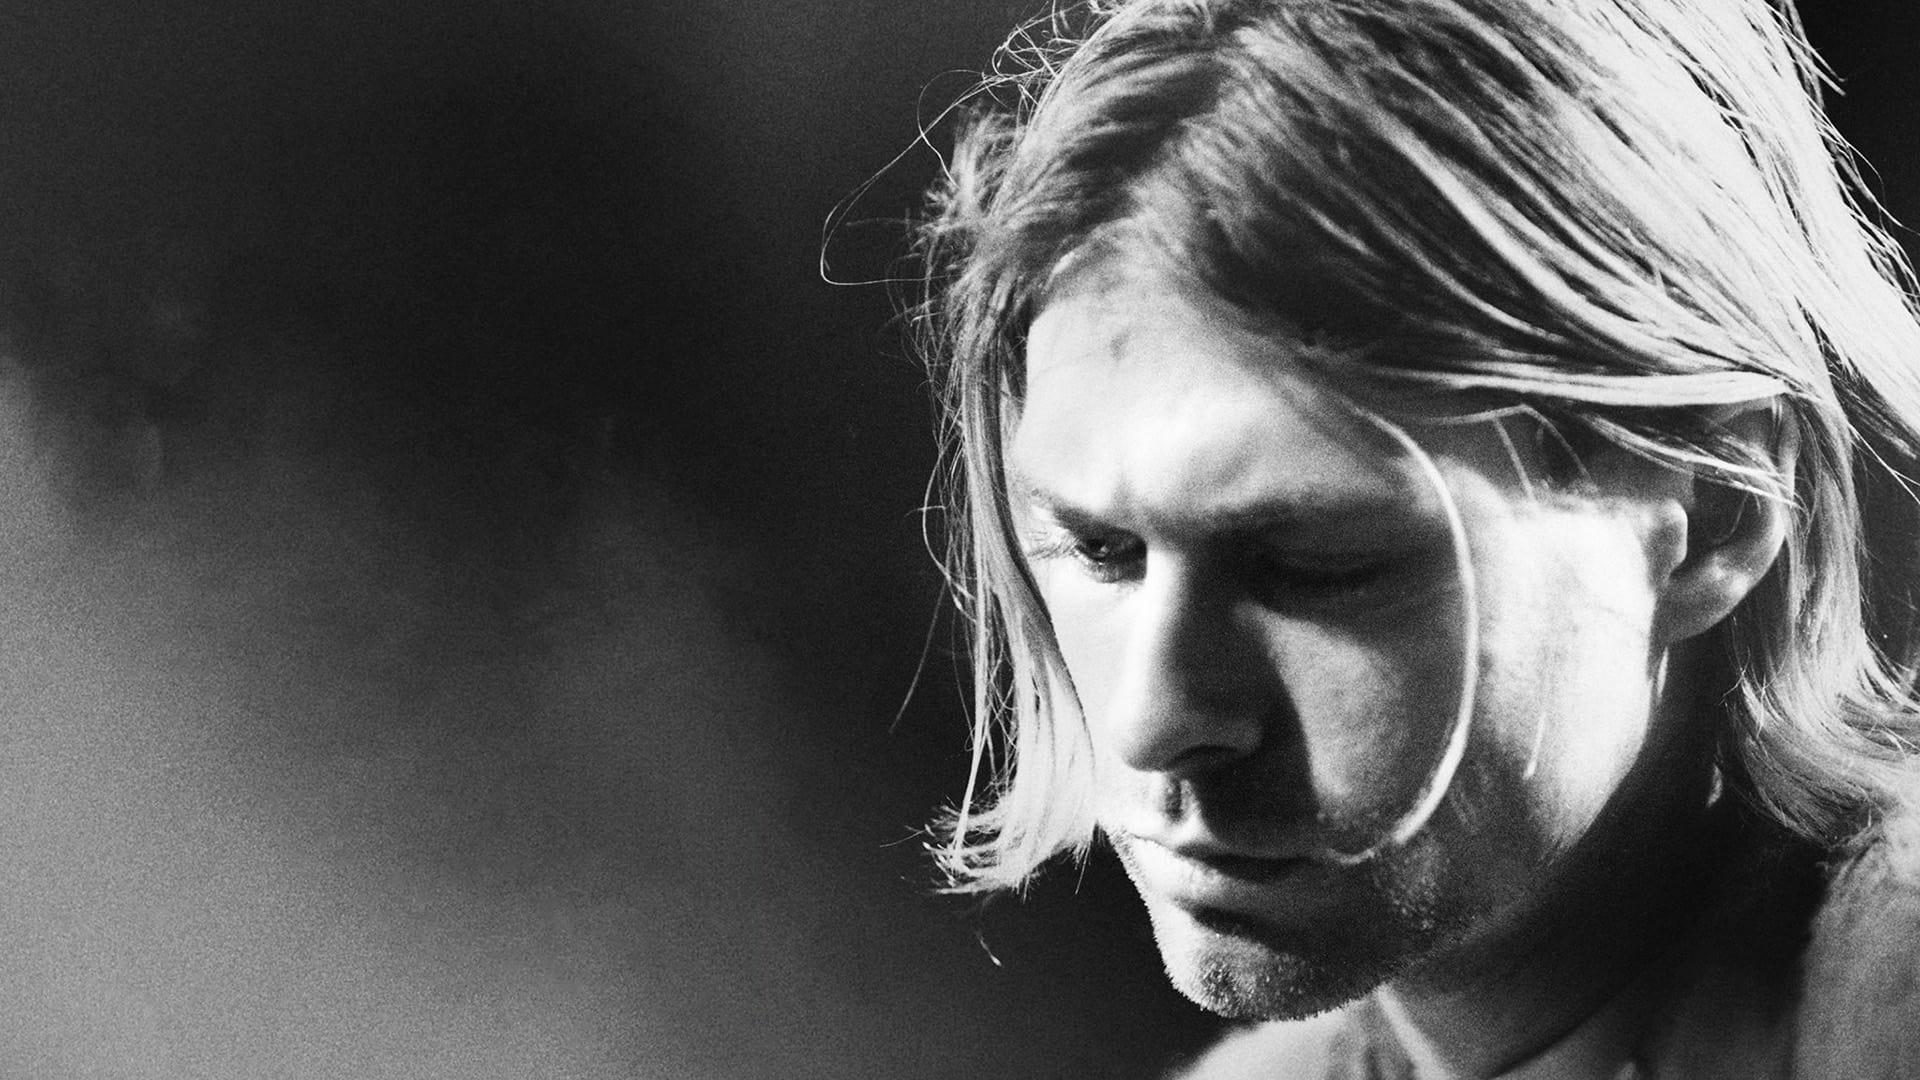 Don Cobain backdrop